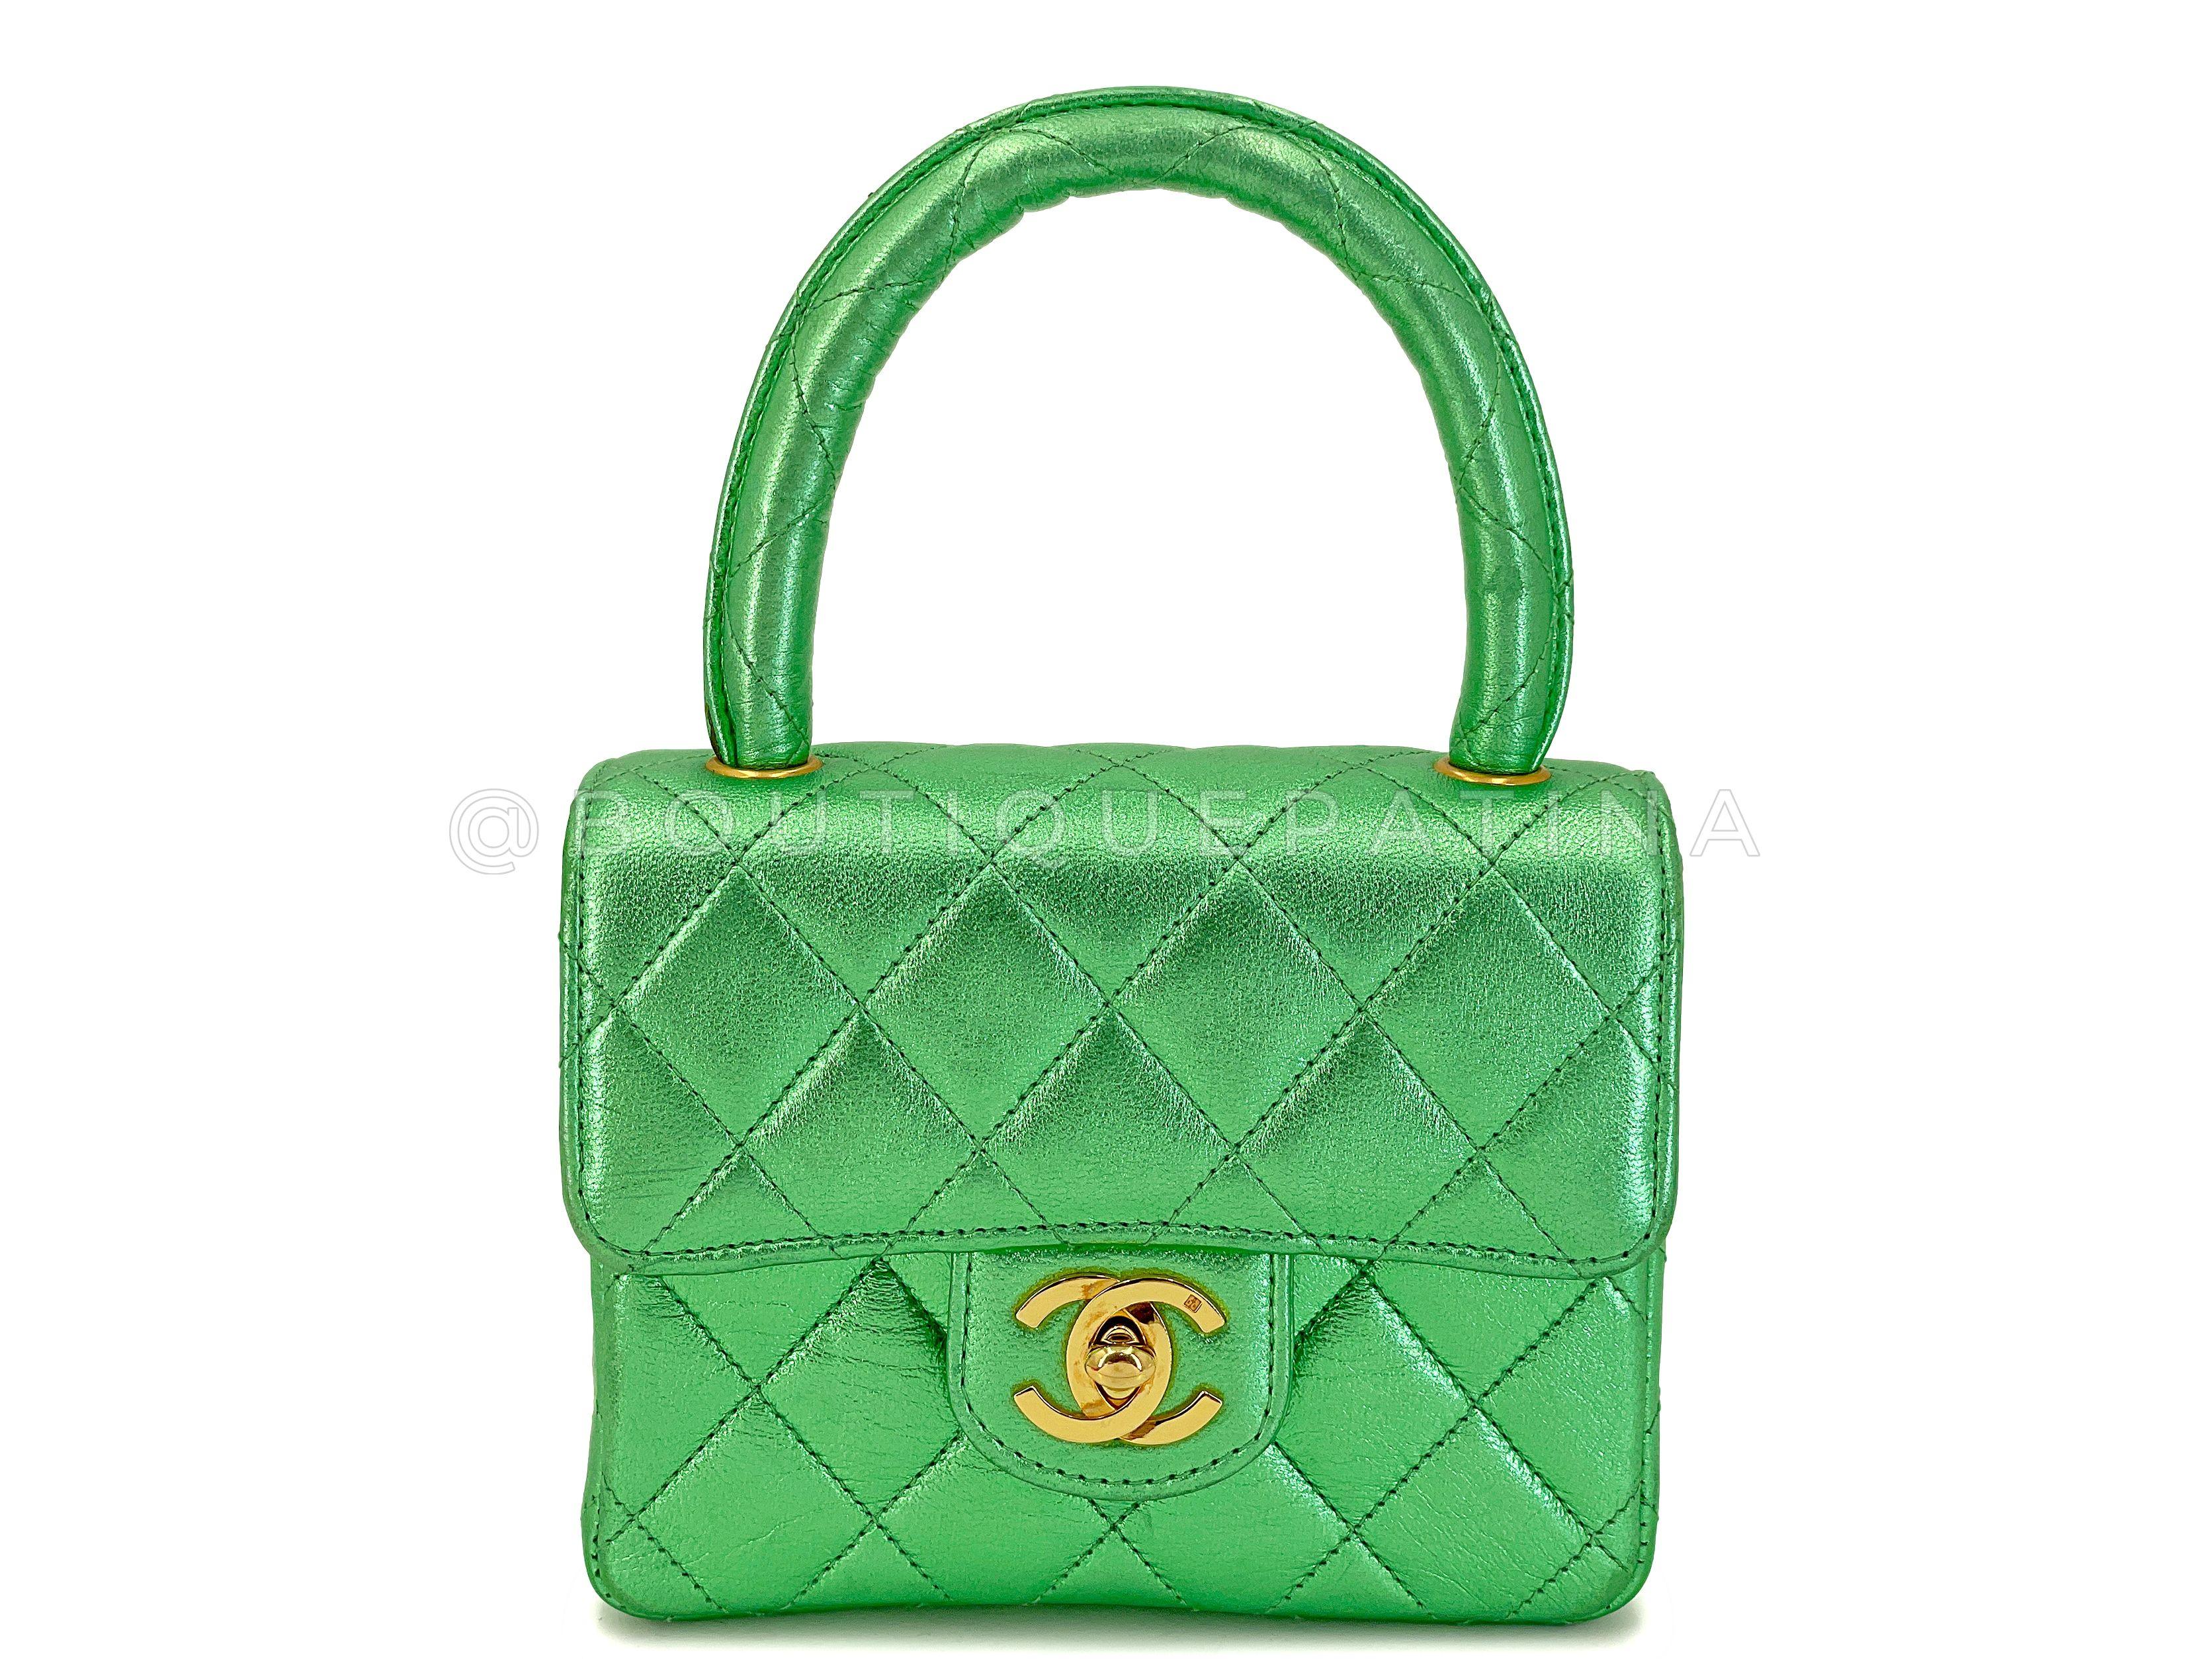 Chanel 1994 Vintage Parent Child Bag Kelly Flap Set Metallic Green 24k GHW 67742 For Sale 10